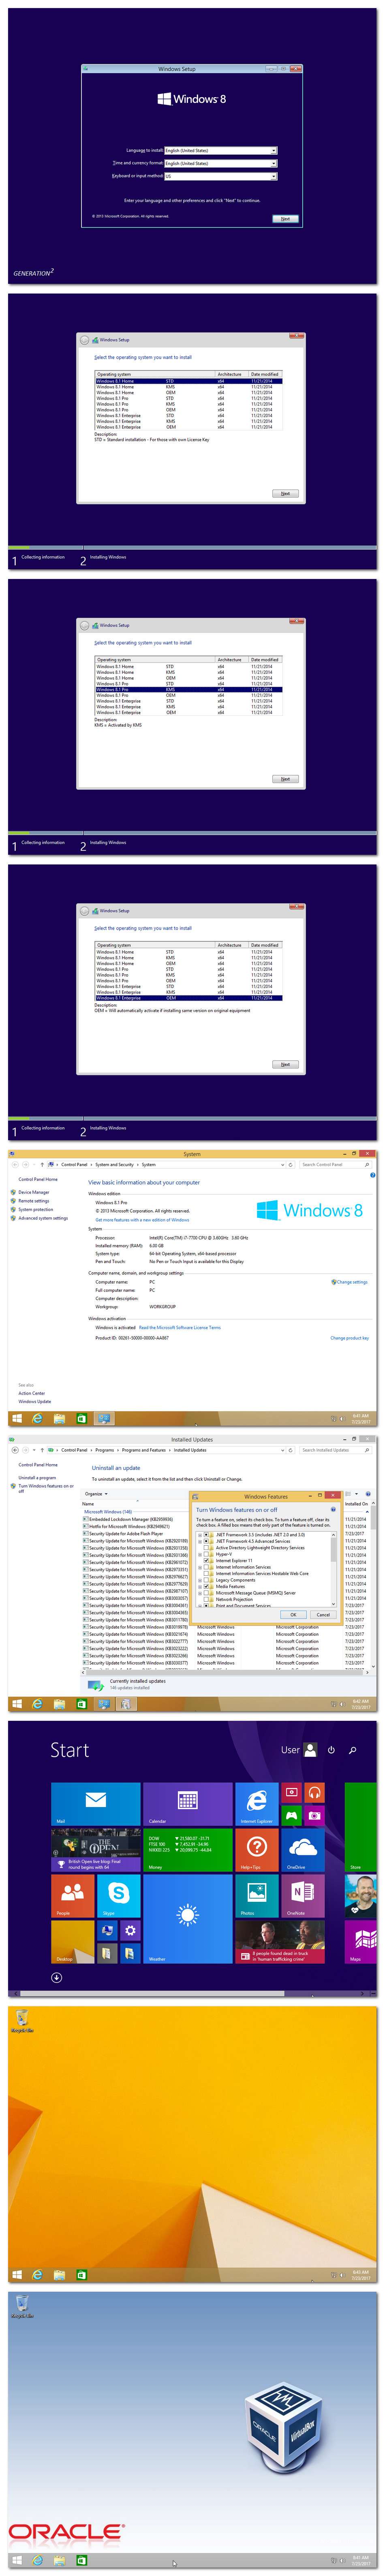 Windows 7 8.1 10 X86 X64 DUAL-BOOT ESD 6in1 ENU AUG 2018 {Gen2} utorrent